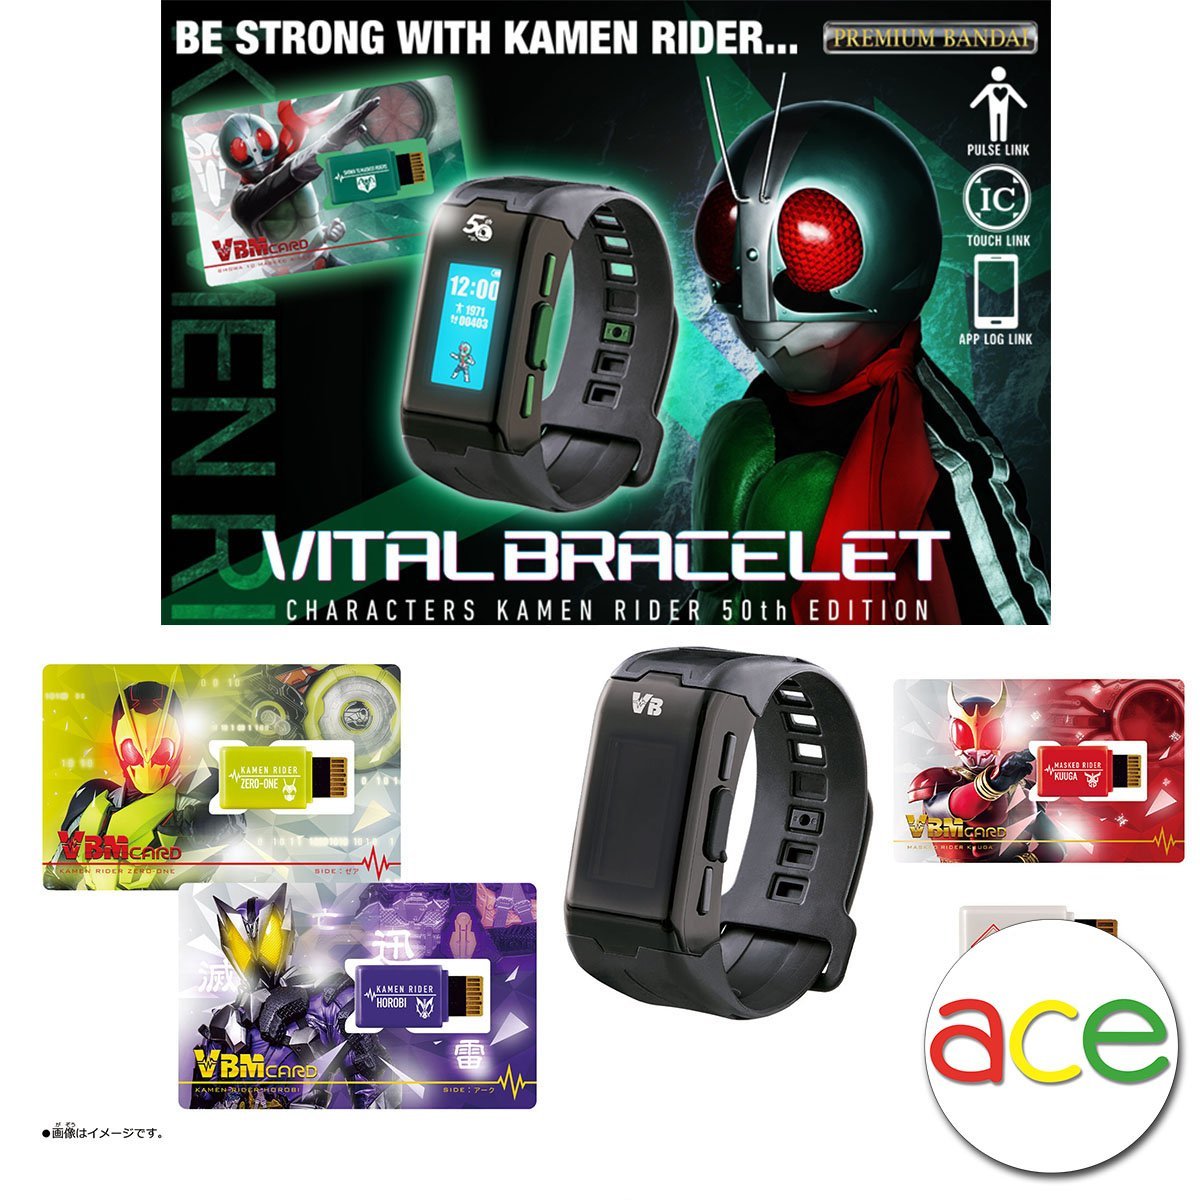 Kamen Rider 50th Anniversary [Vital Bracelet Characters Showa 10 Masked Riders PBandai / Kuuga / VBM Card Set Vol 1]-VB Set 50th Edition-Bandai-Ace Cards & Collectibles